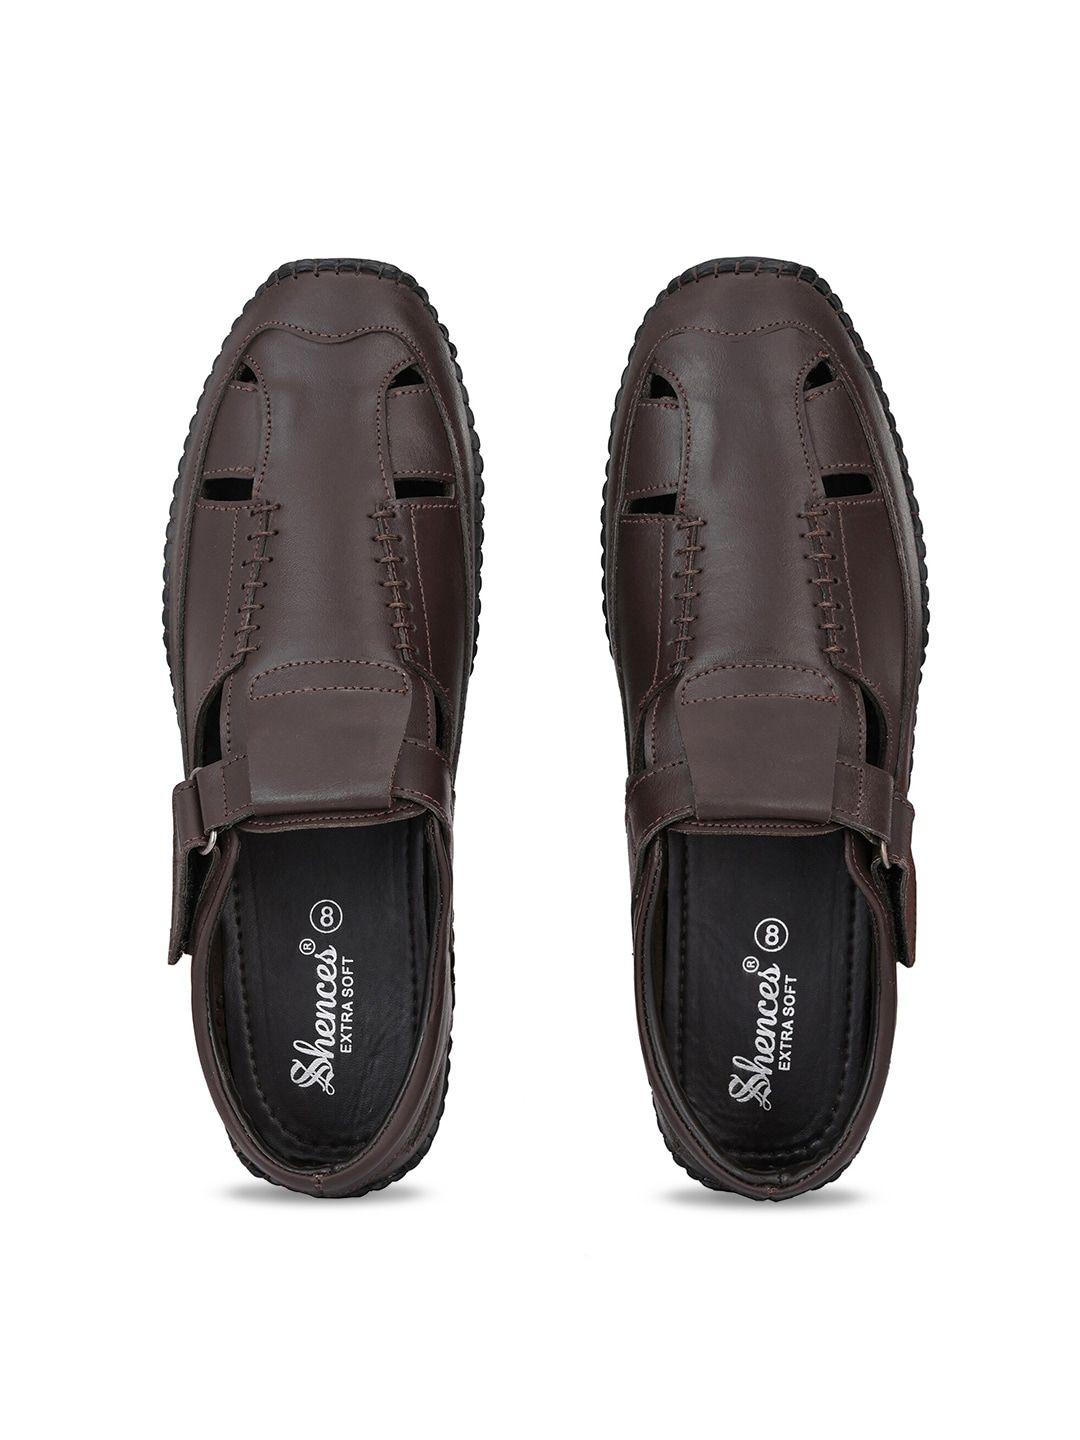 shences-men-leather-shoe-style-sandals